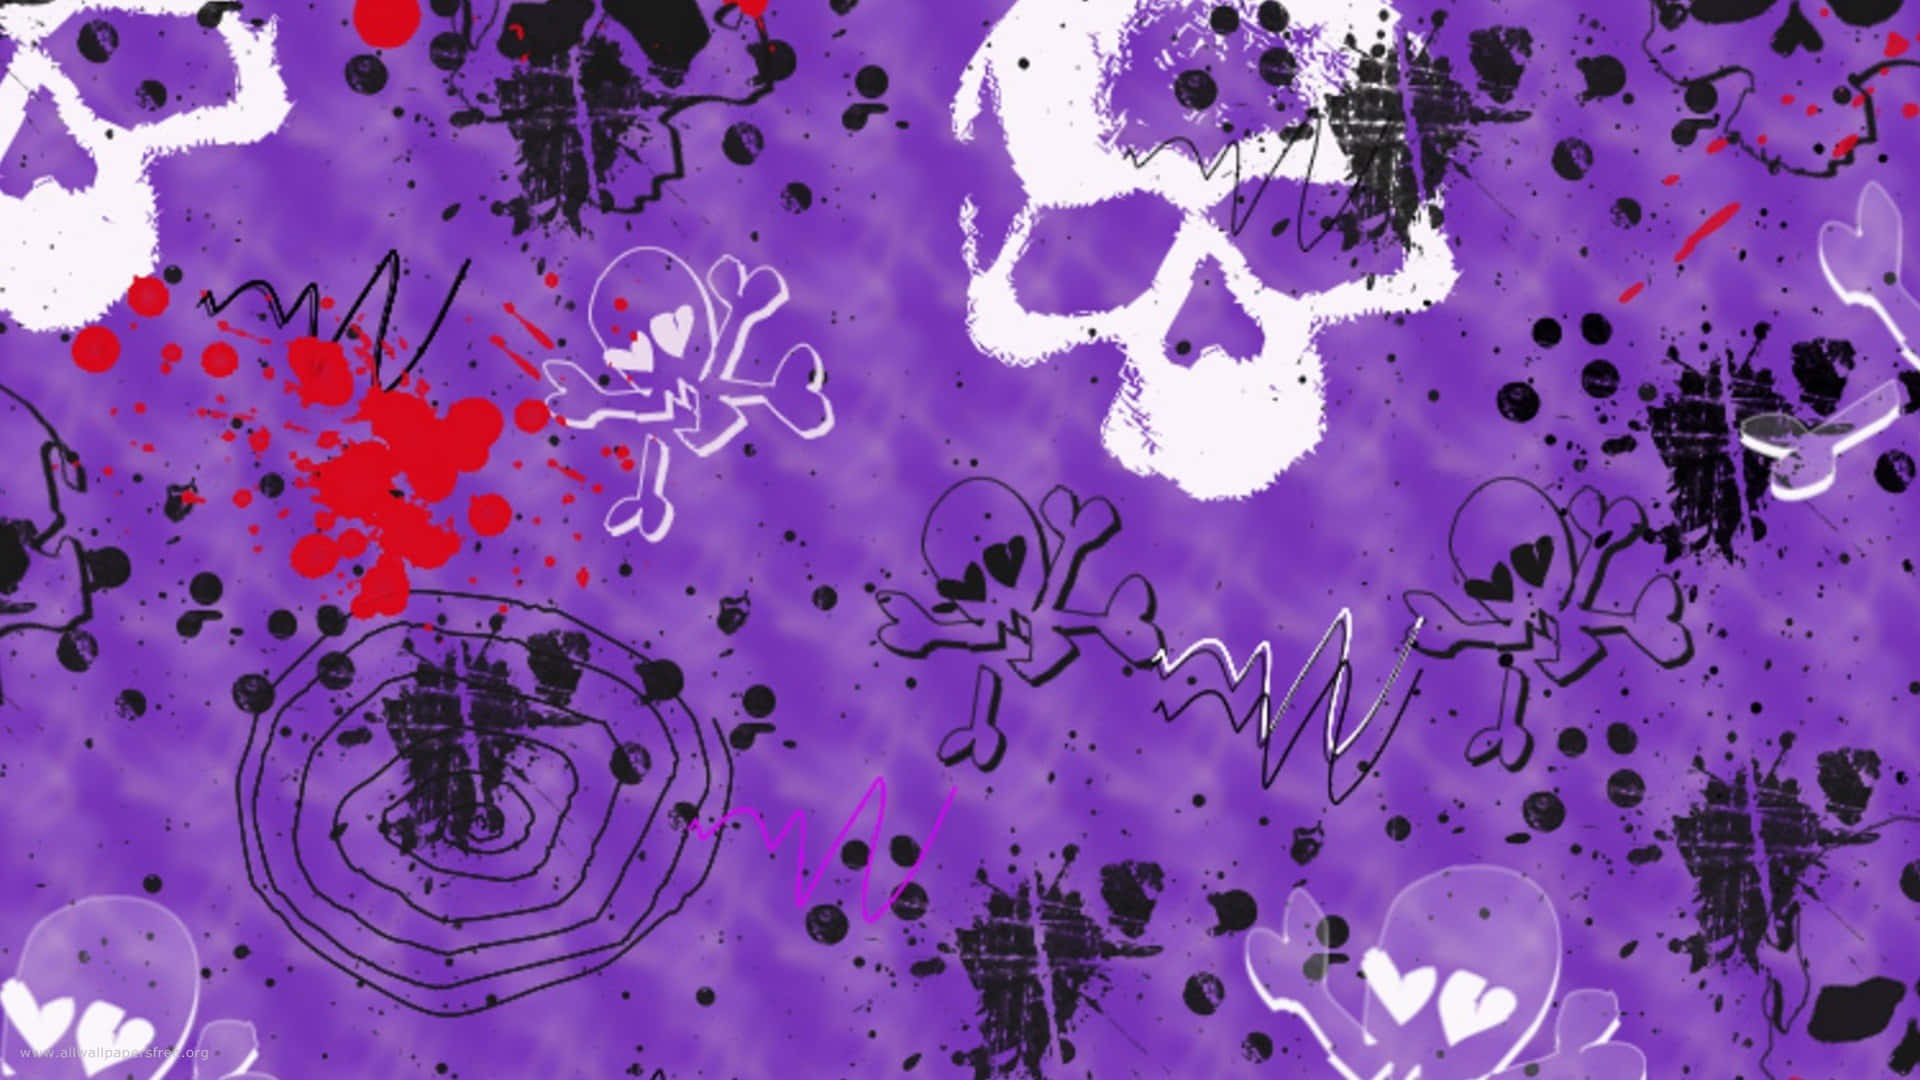 purple skulls and splatters on a purple background